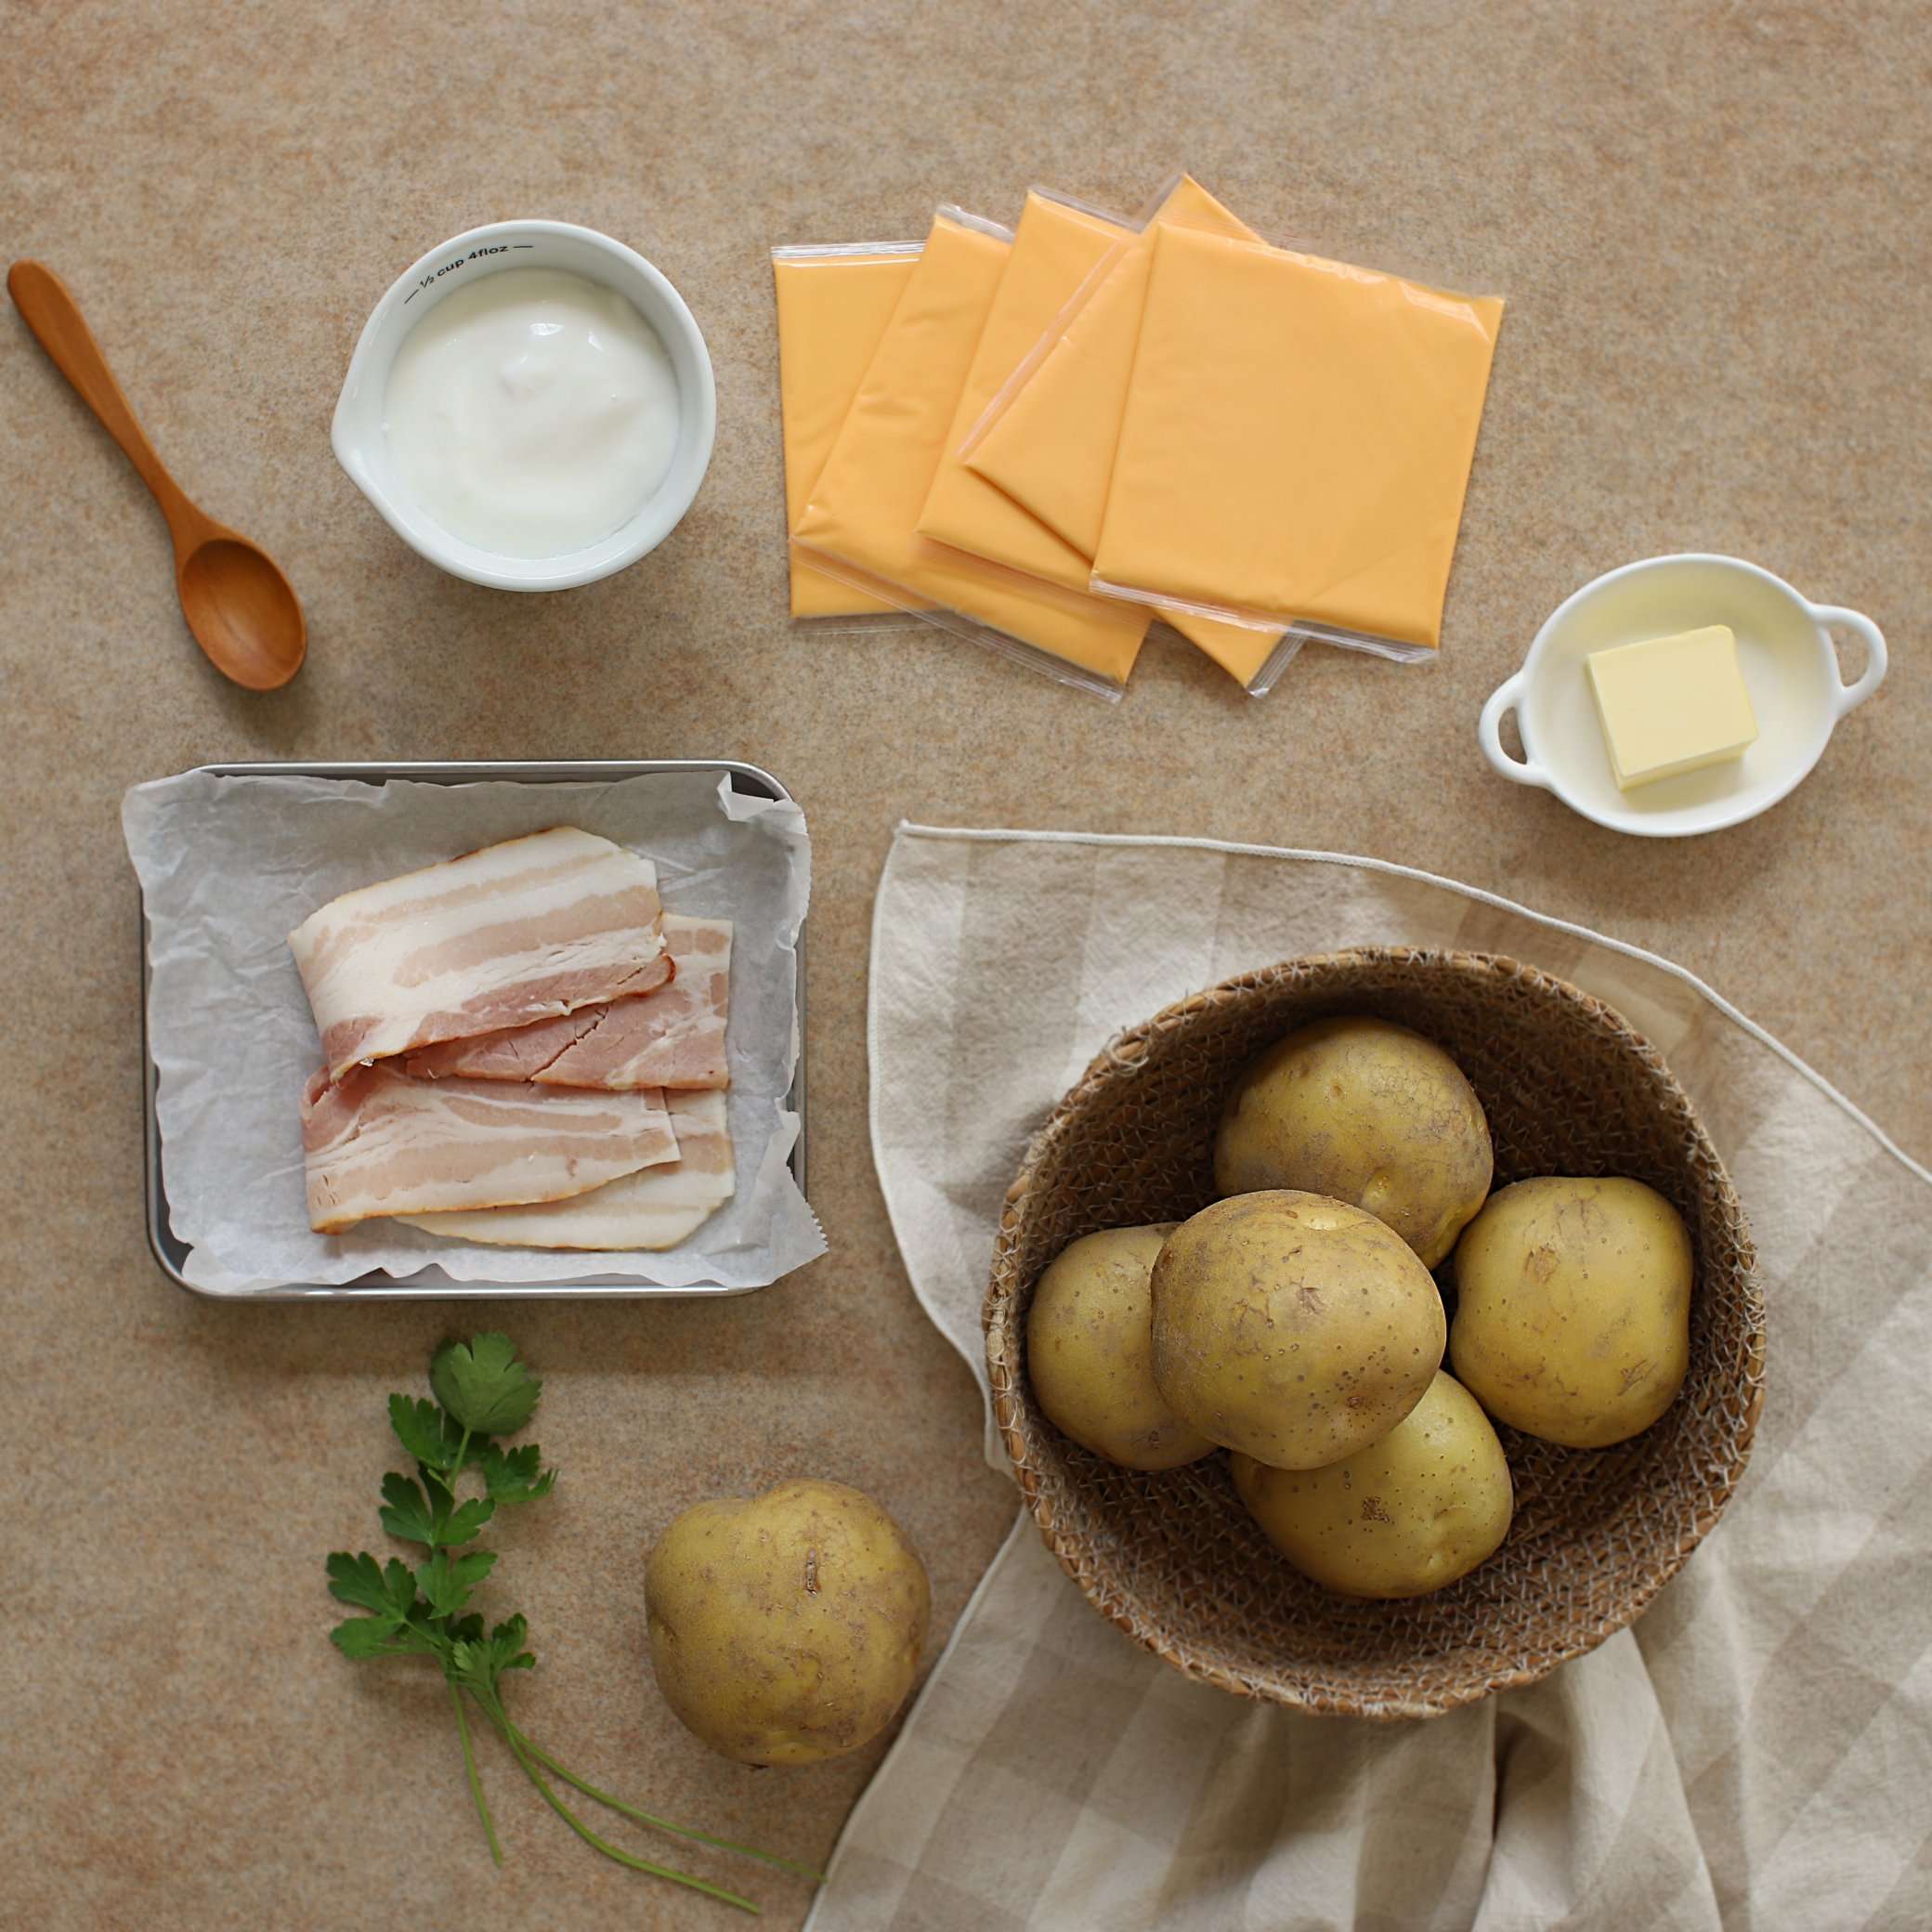 Bước đầu tiên là chuẩn bị nguyên liệu chính: khoai tây và gia vị 